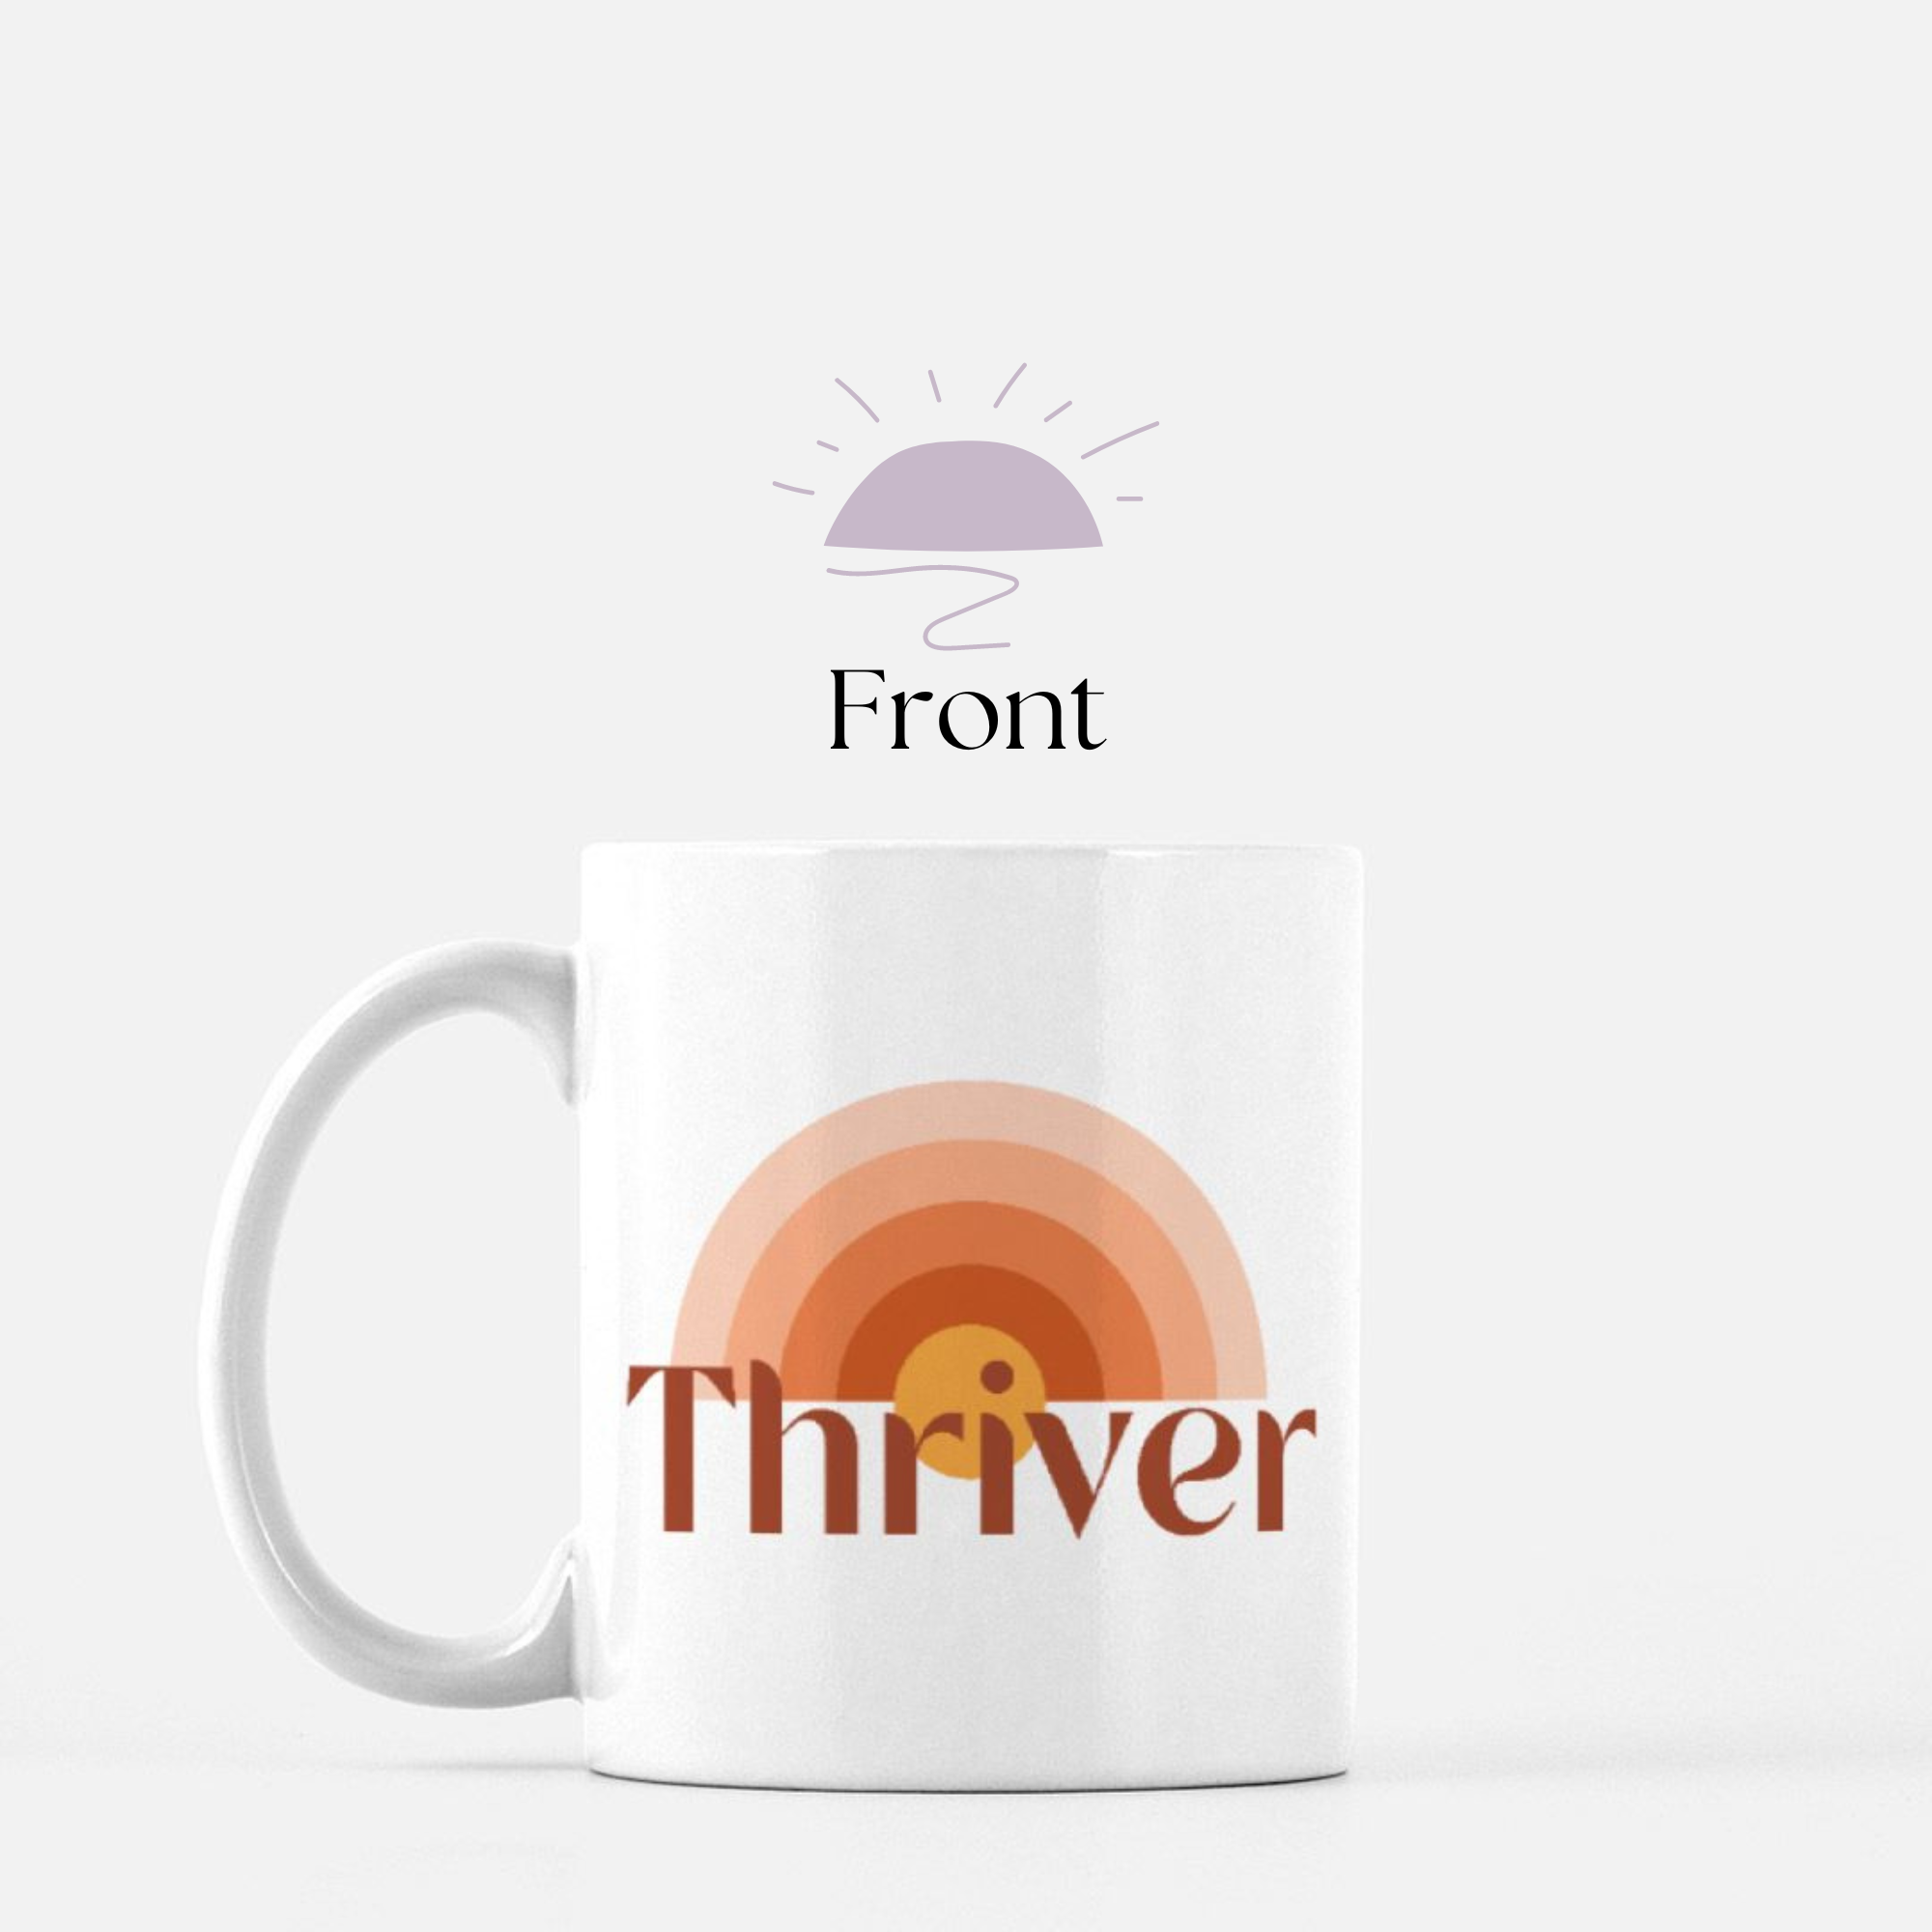 Thriver ceramic mug front